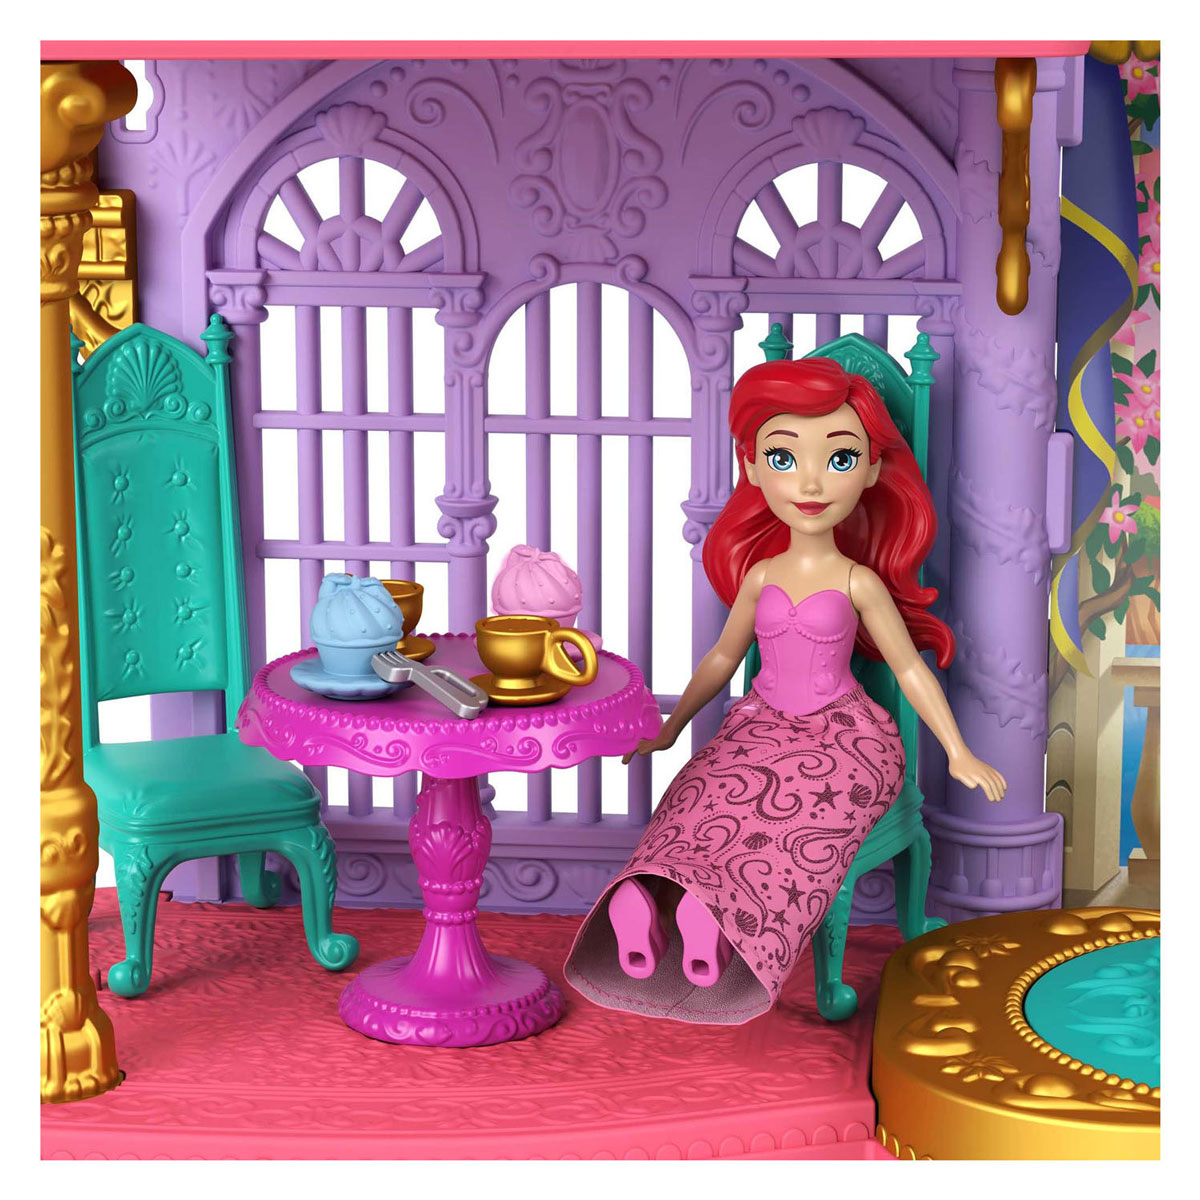 Maison de poupée Princesse Disney Artiels Land and Sea Castle